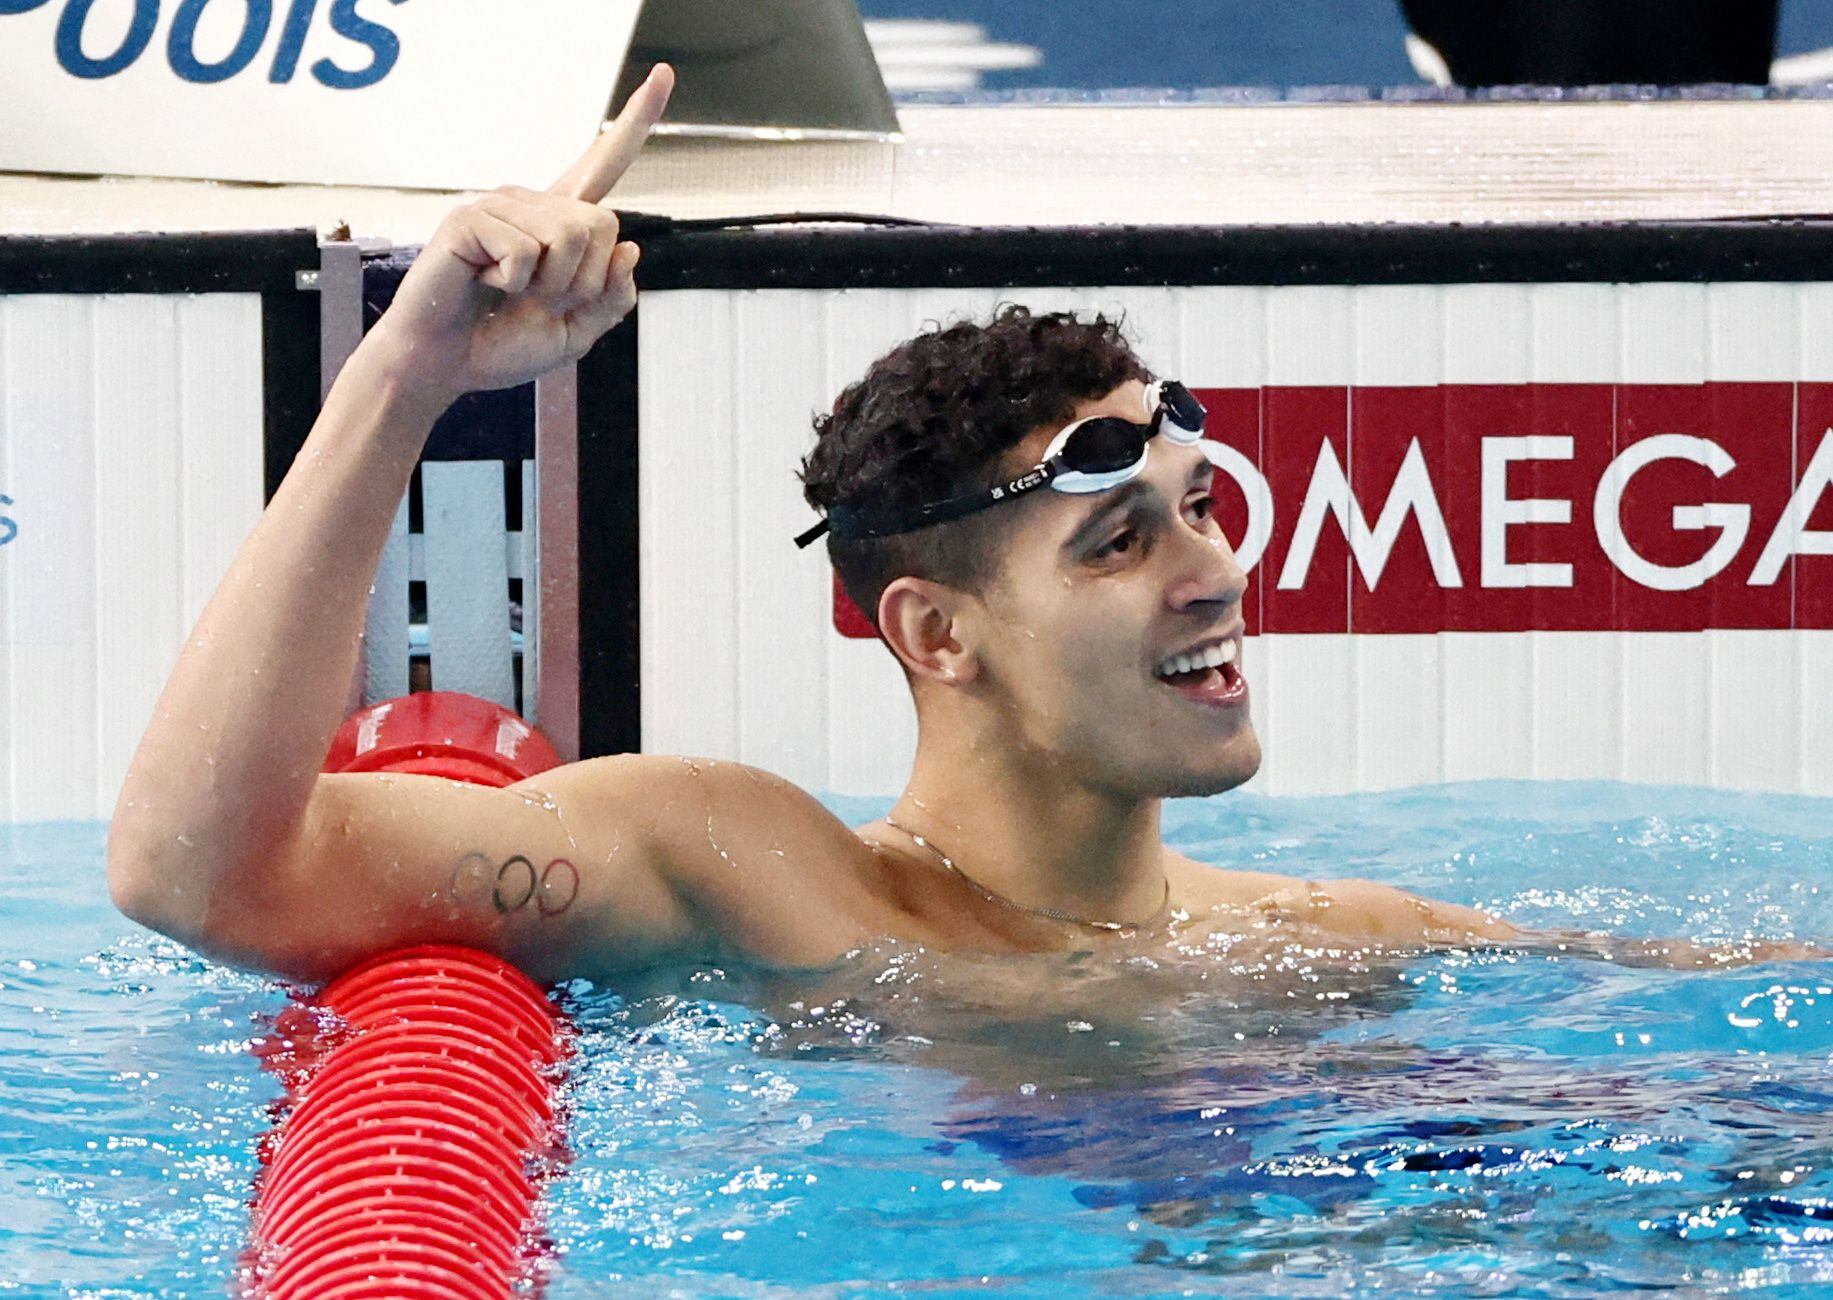 Hugo González nada más conseguir su oro mundial (REUTERS/Marko Djurica)